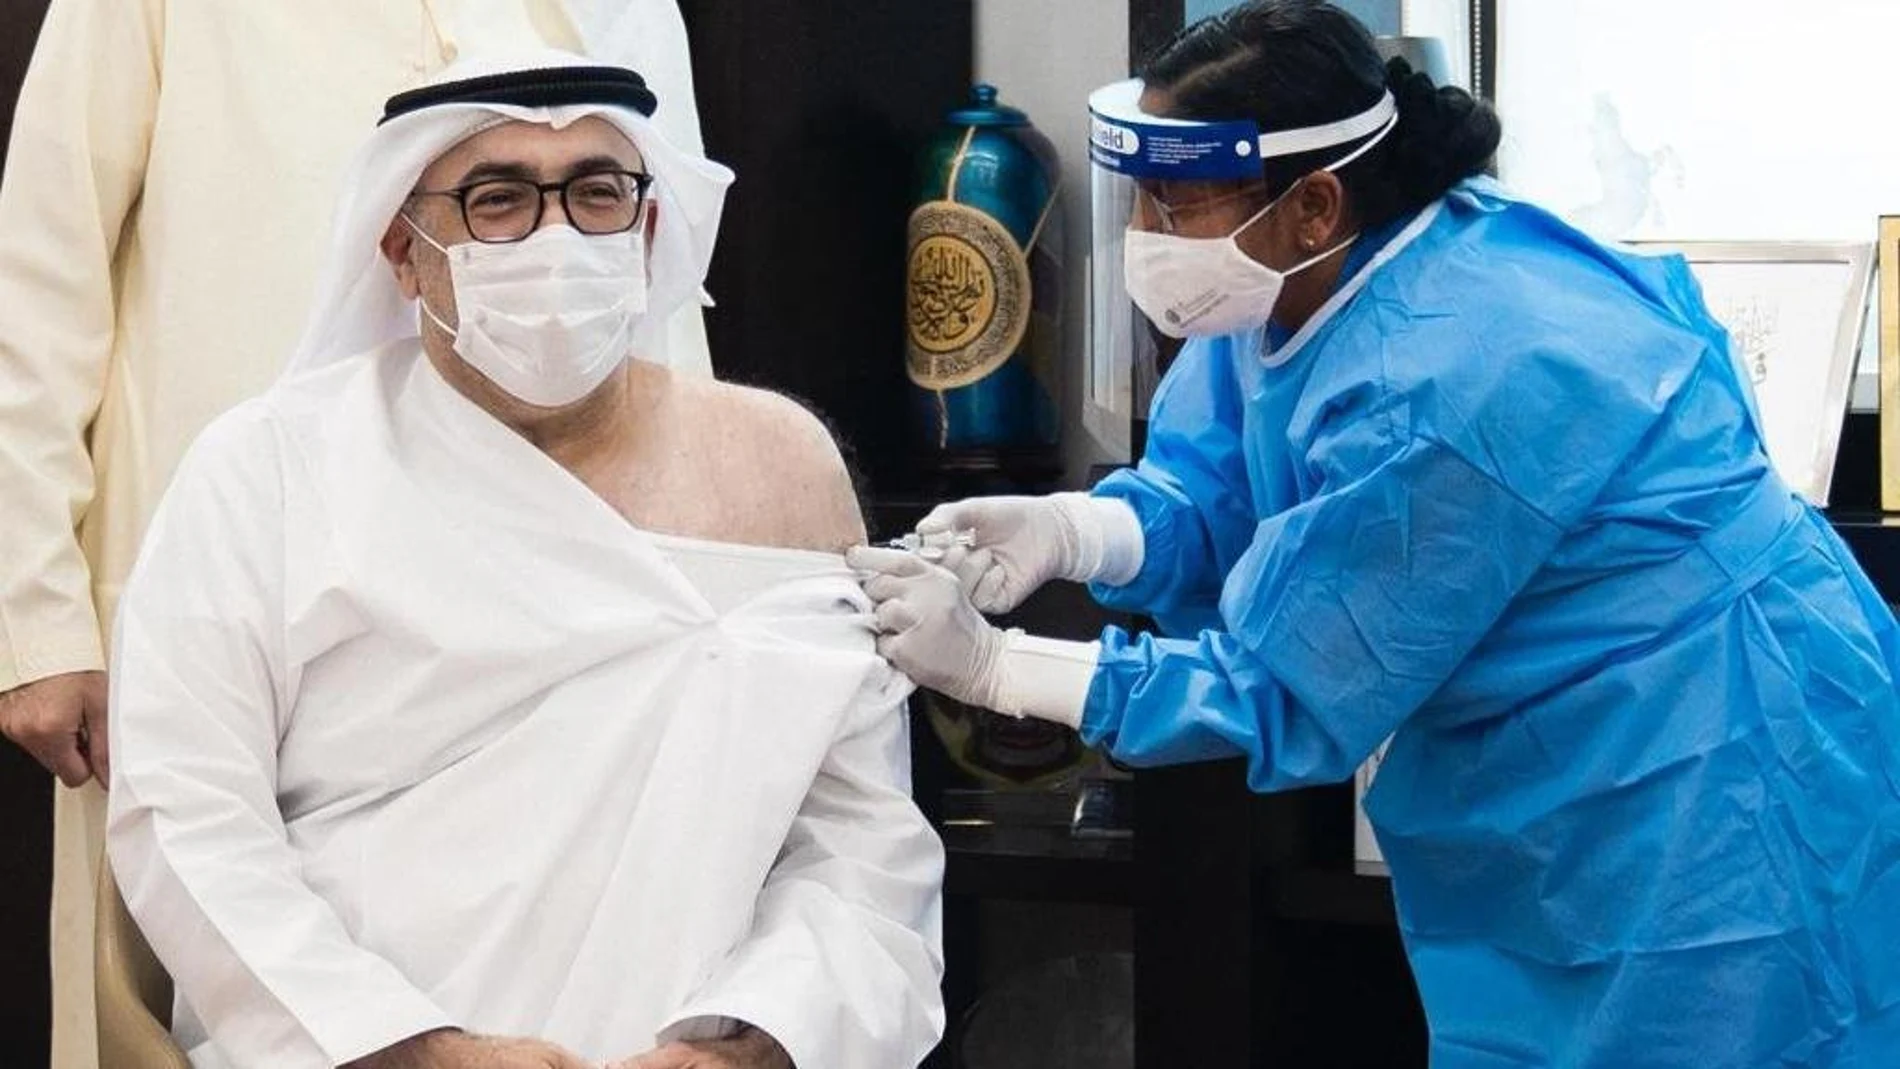 El ministro de Salud de Emiratos Árabes Unidos, Abdulrahman al Owais, recibe la vacuna contra la COVID-19